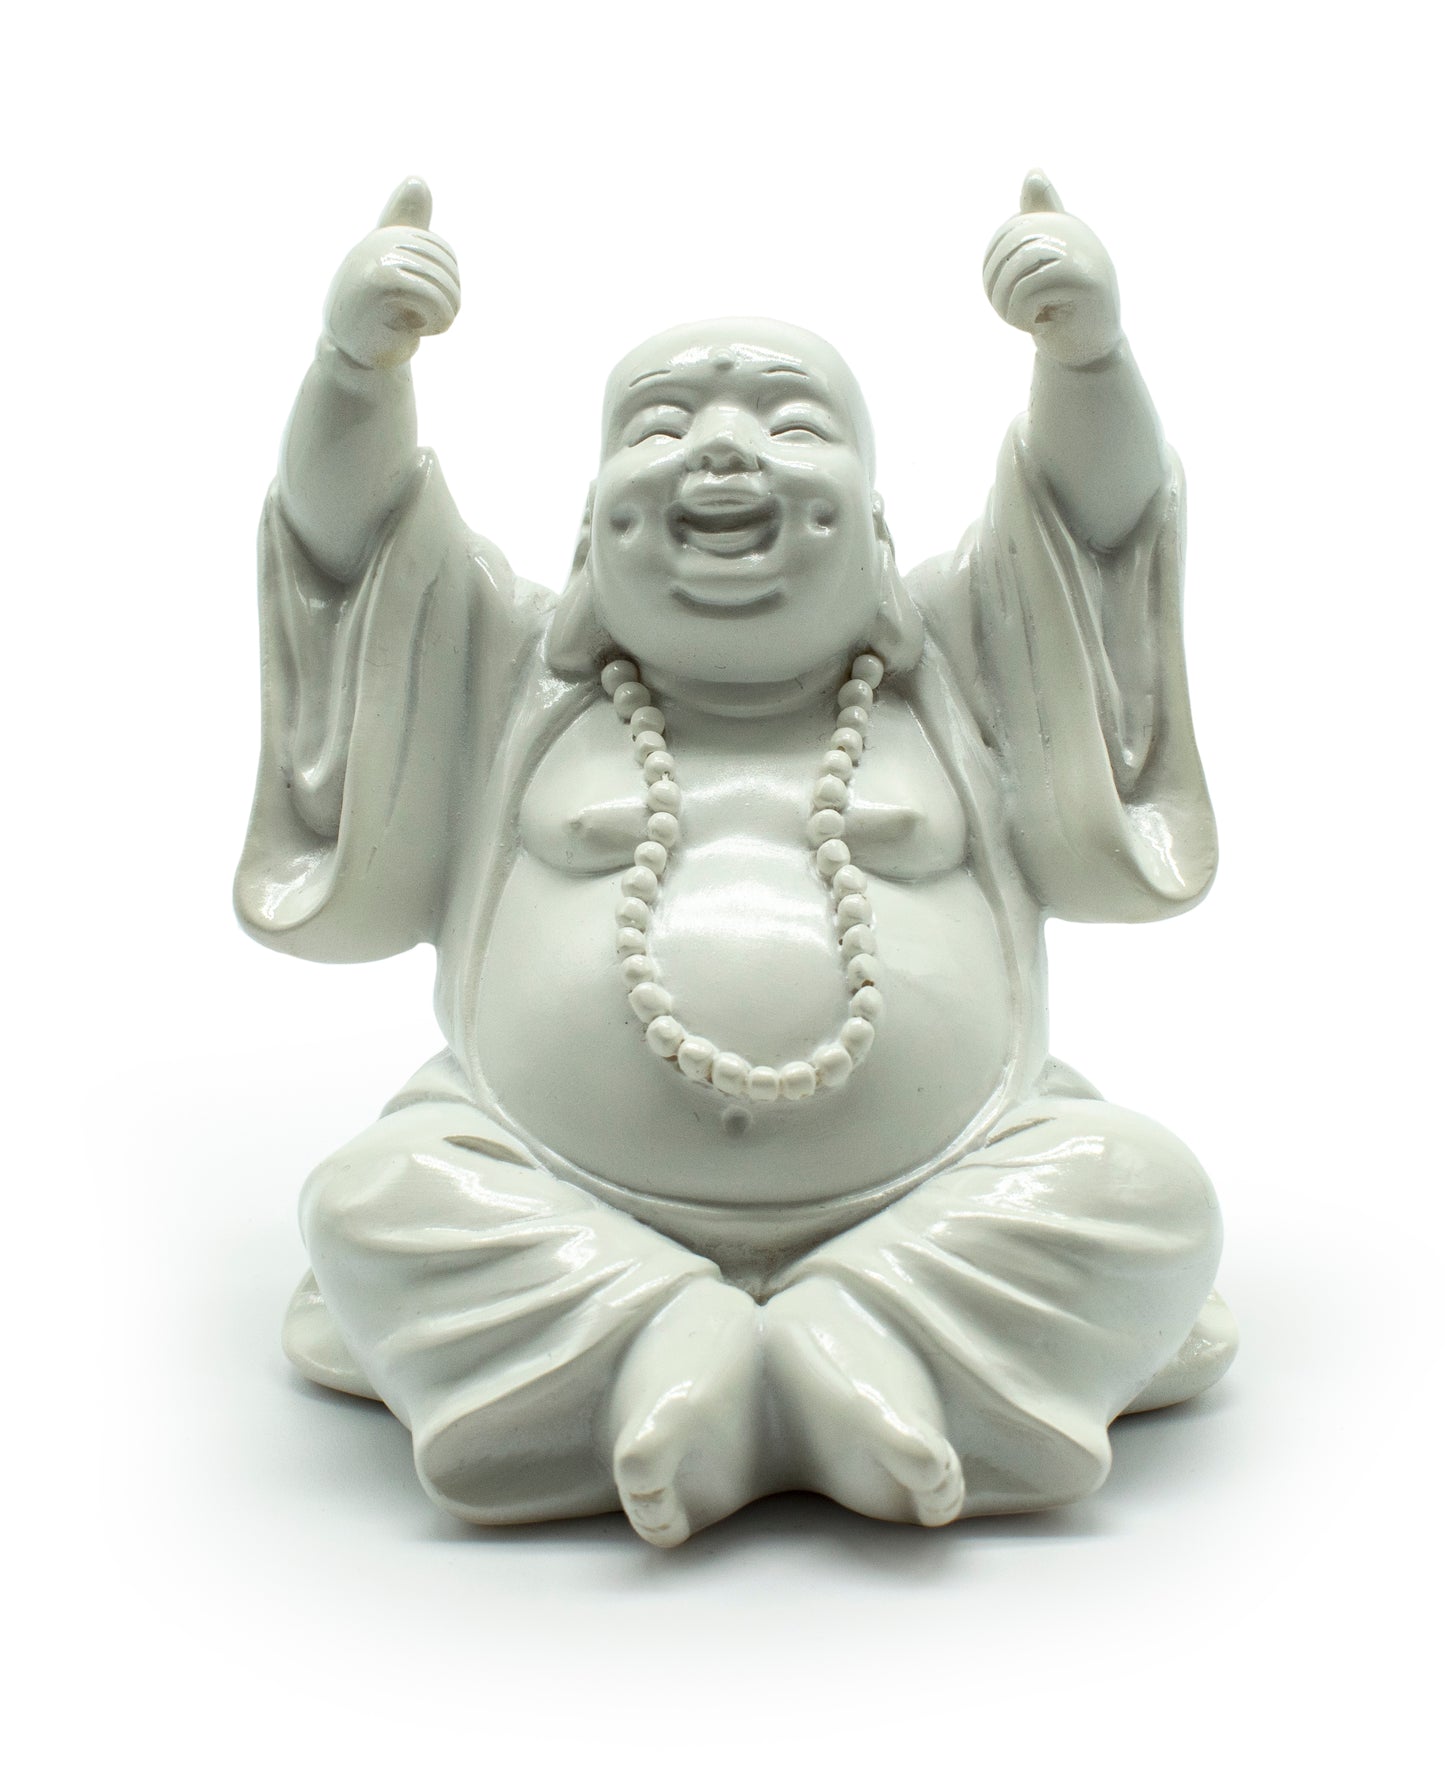 Thumbs Up Buddha - White